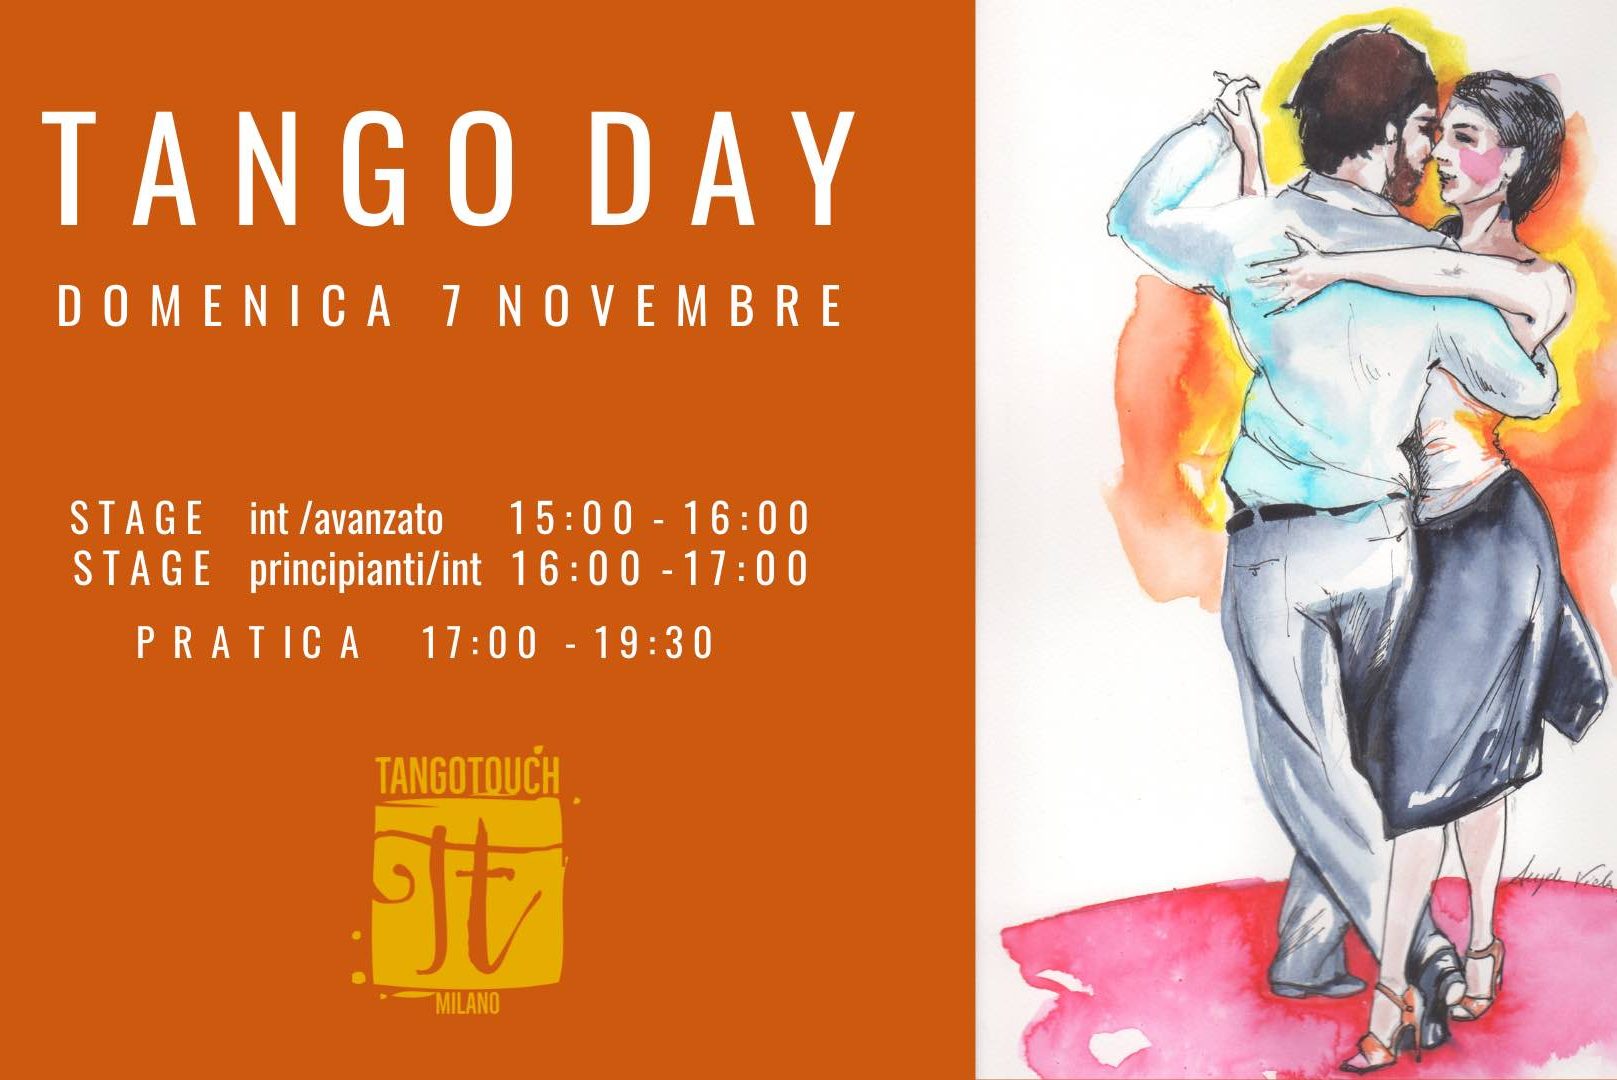 Stage e Pratica Tango Touch - domenica 7 novembre